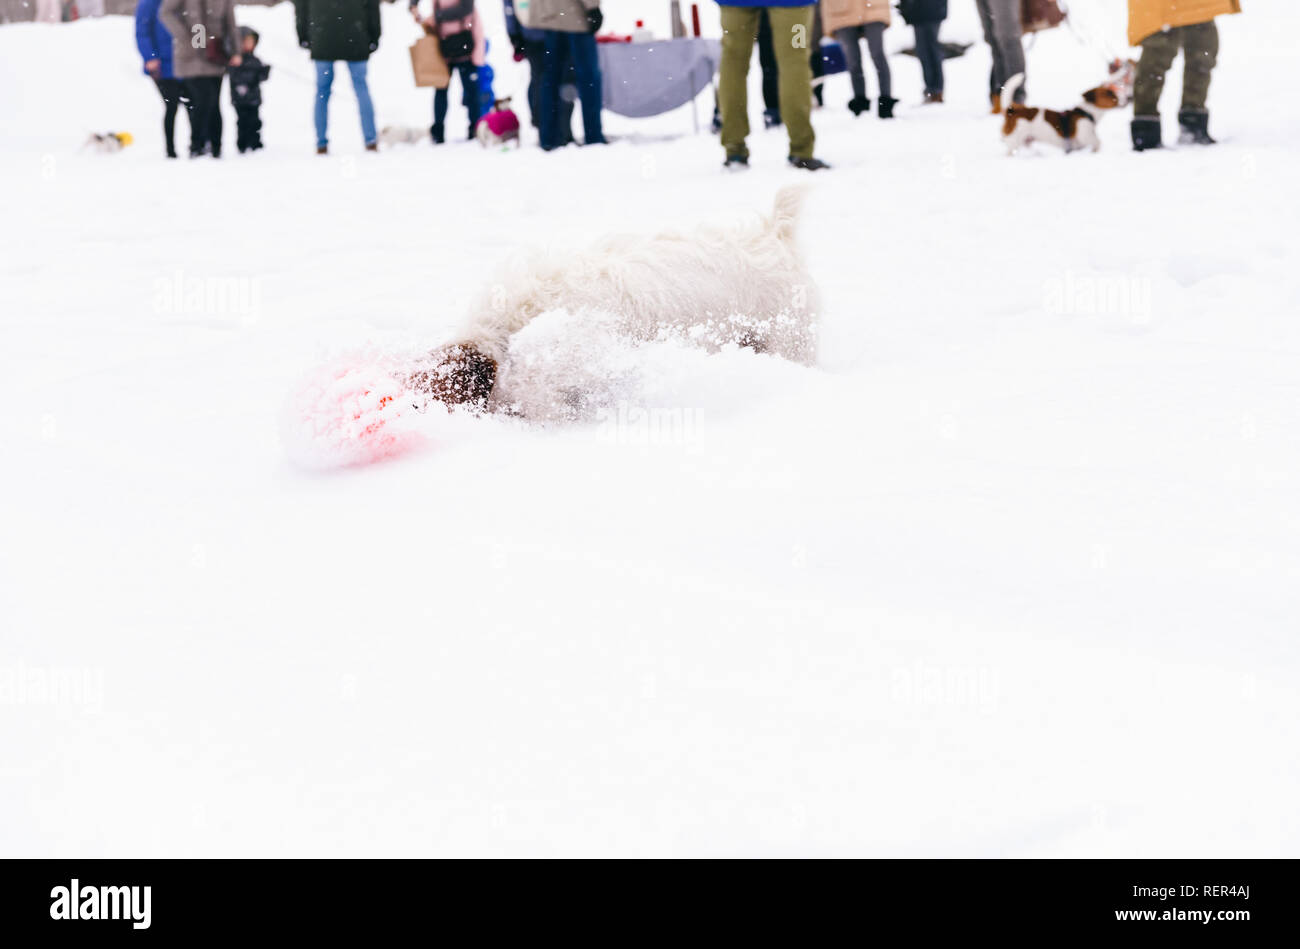 Hund spielen vor kynologischer Verein Versammlung an schönen Wintertag Stockfoto